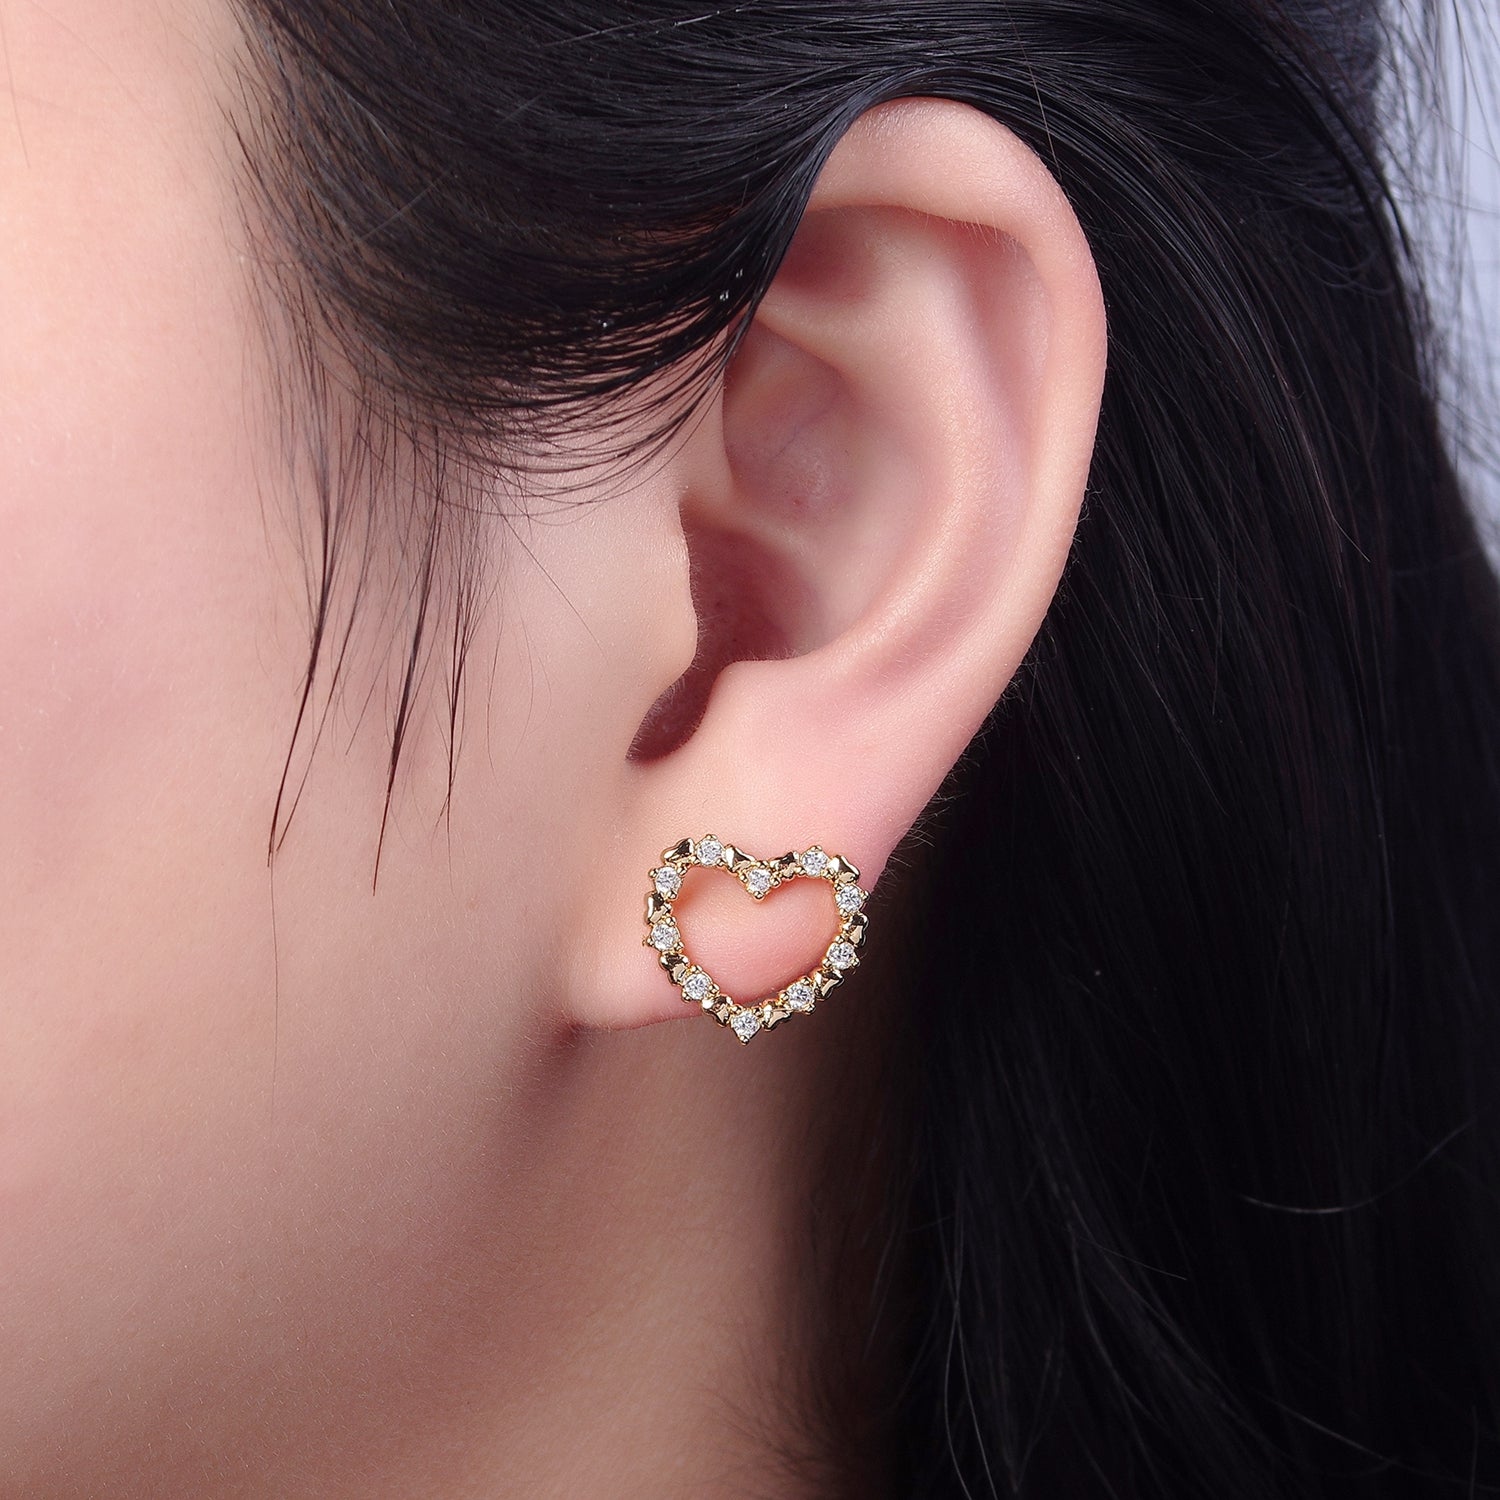 Dainty Gold Heart Stud Earrings Minimalist Delicate Earring 18K Gold Filled Stud Earring V-121 - DLUXCA